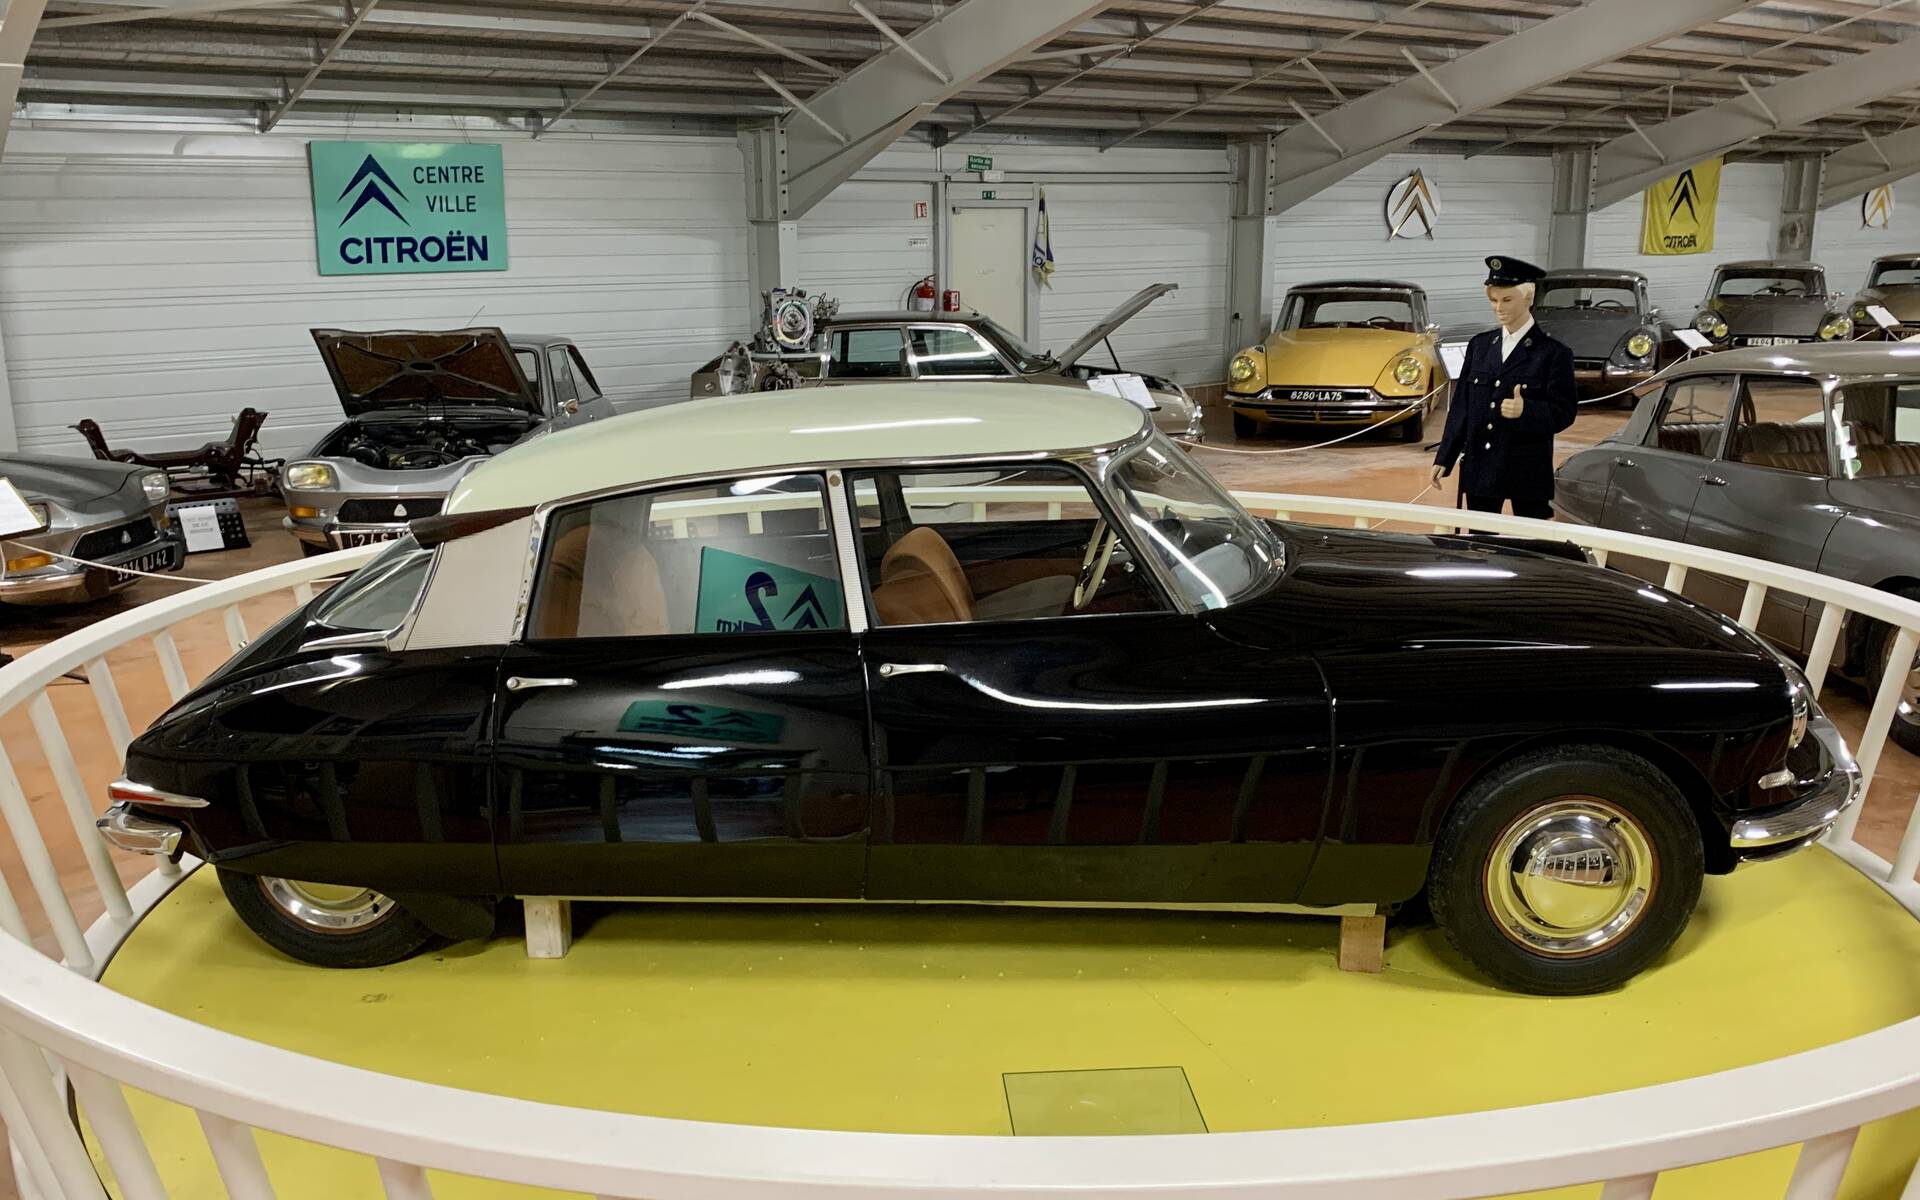 Photos: plus de 100 Citroën d'exception réunies dans un musée en France 543145-photos-plus-de-100-citroen-d-exception-reunies-dans-un-musee-en-france